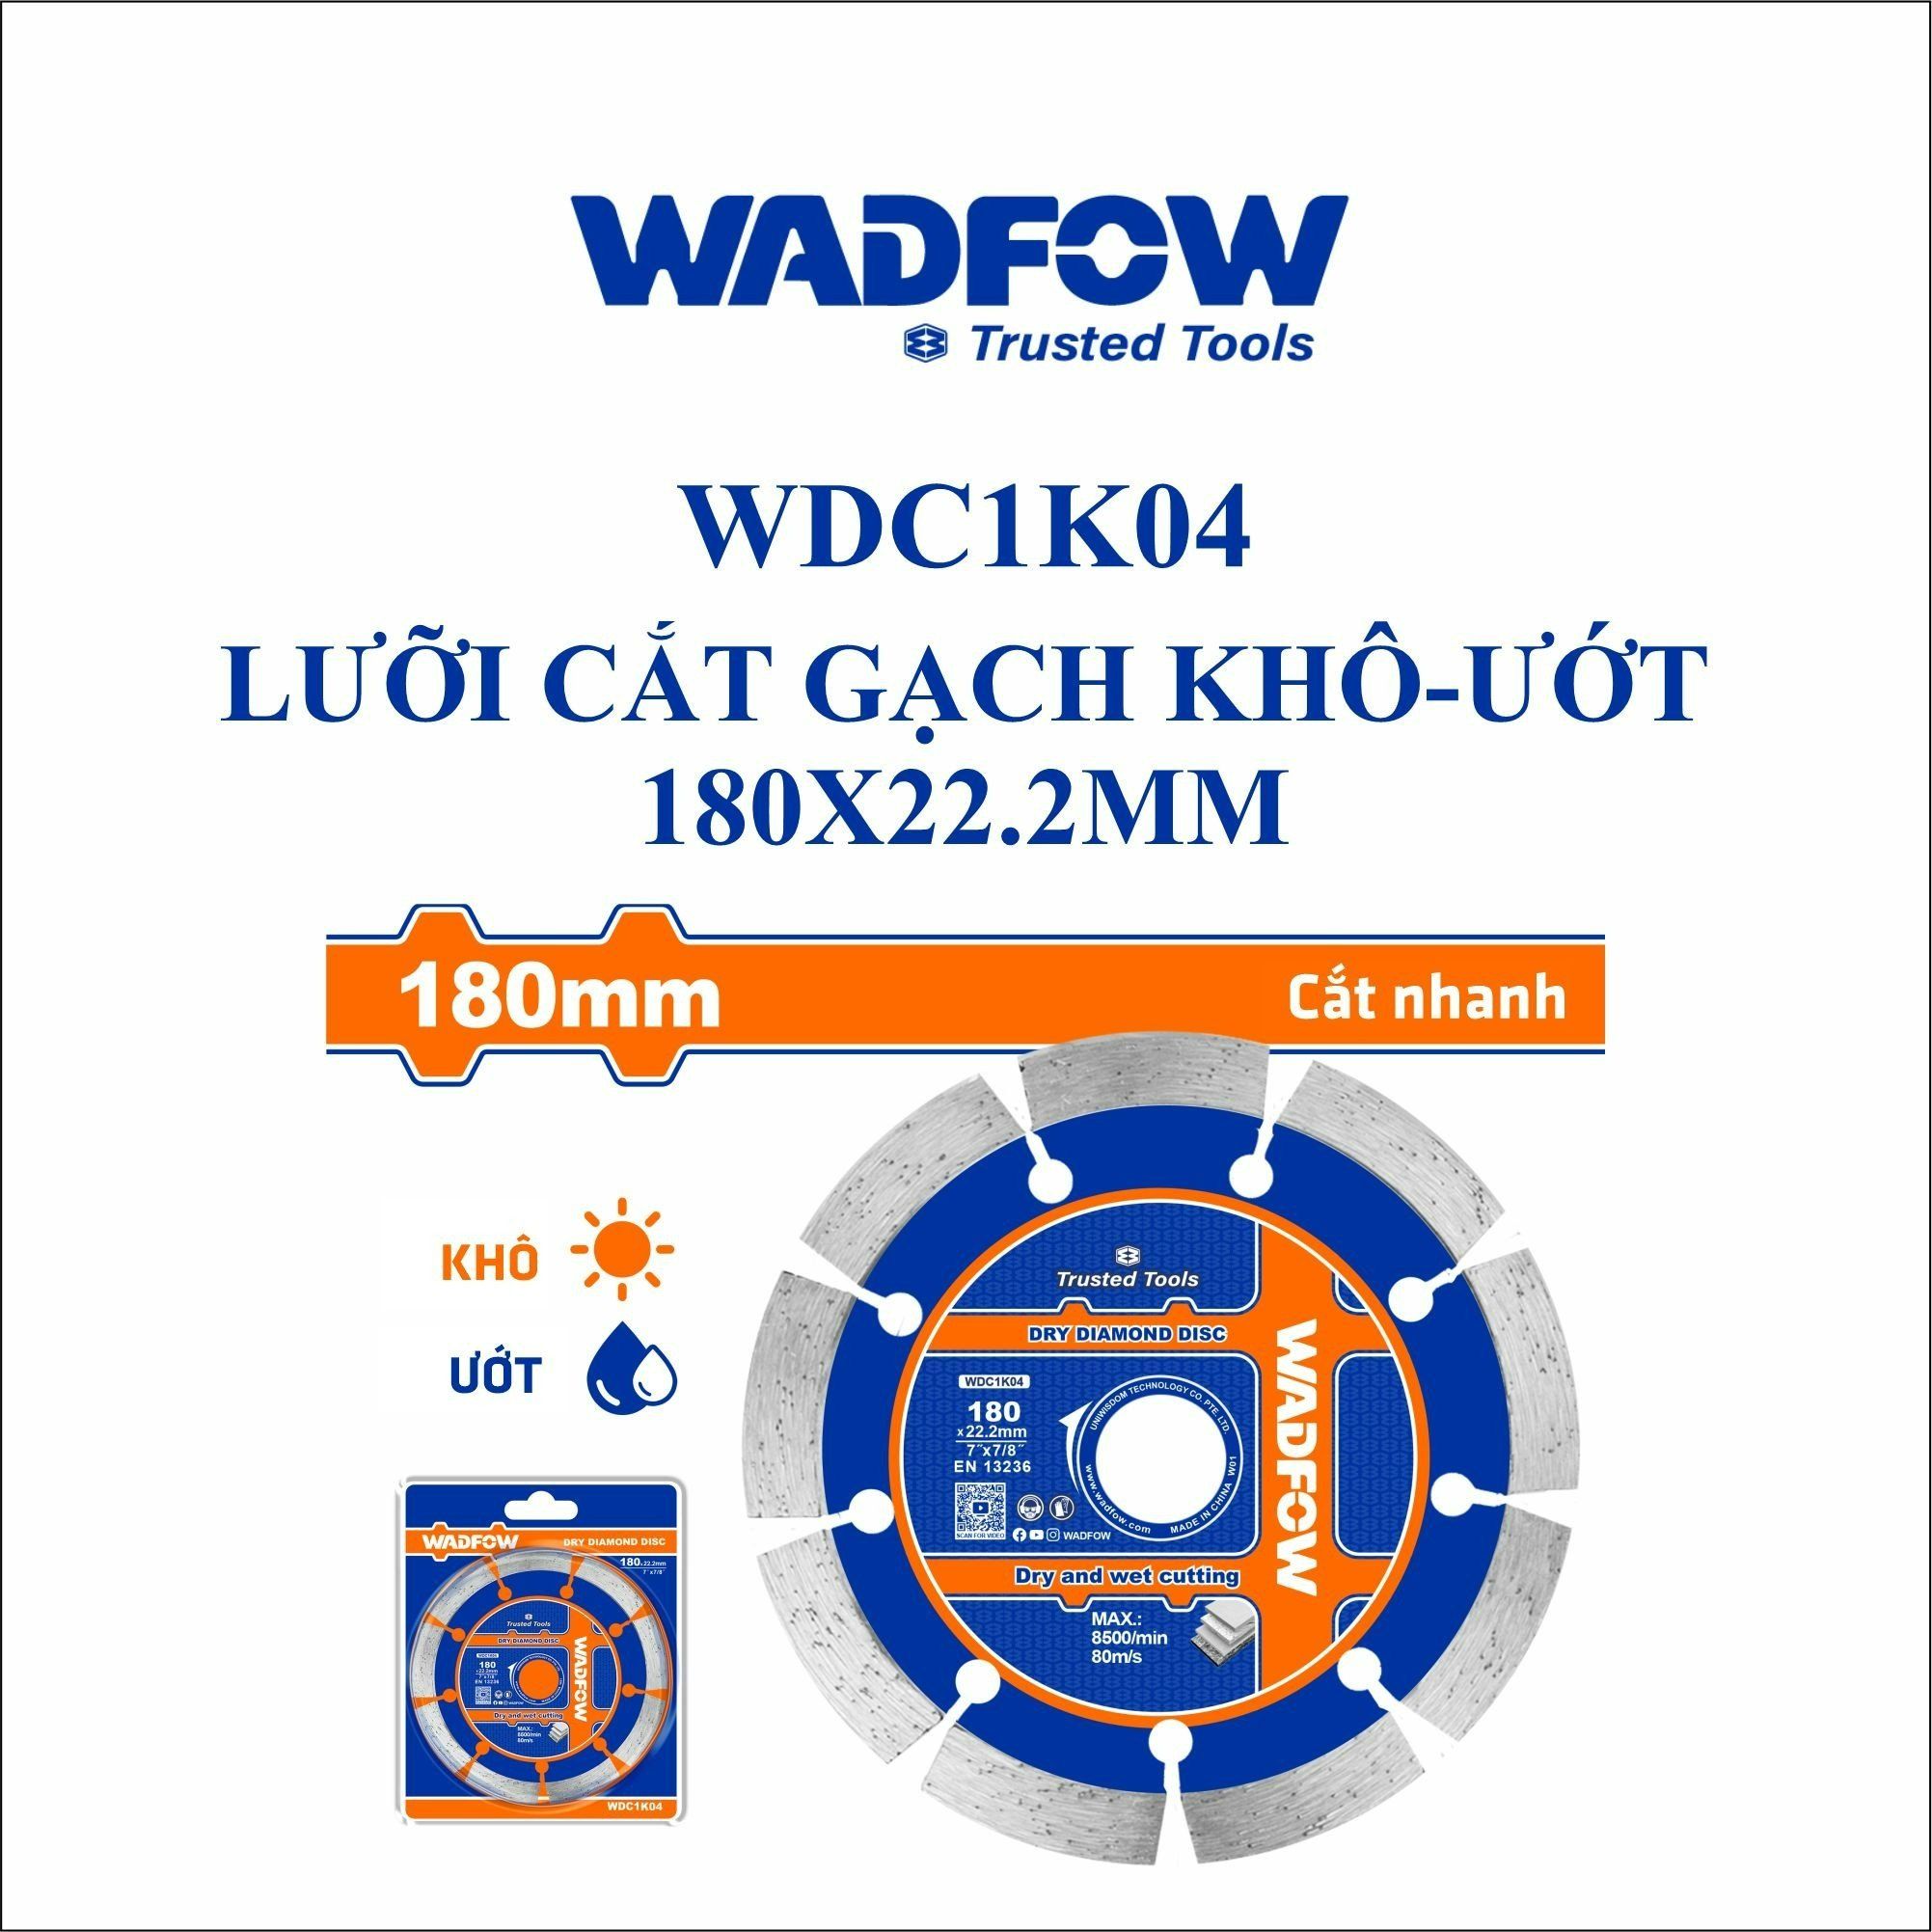  Lưỡi cắt gạch khô-ướt 180x22.2mm WADFOW WDC1K04 